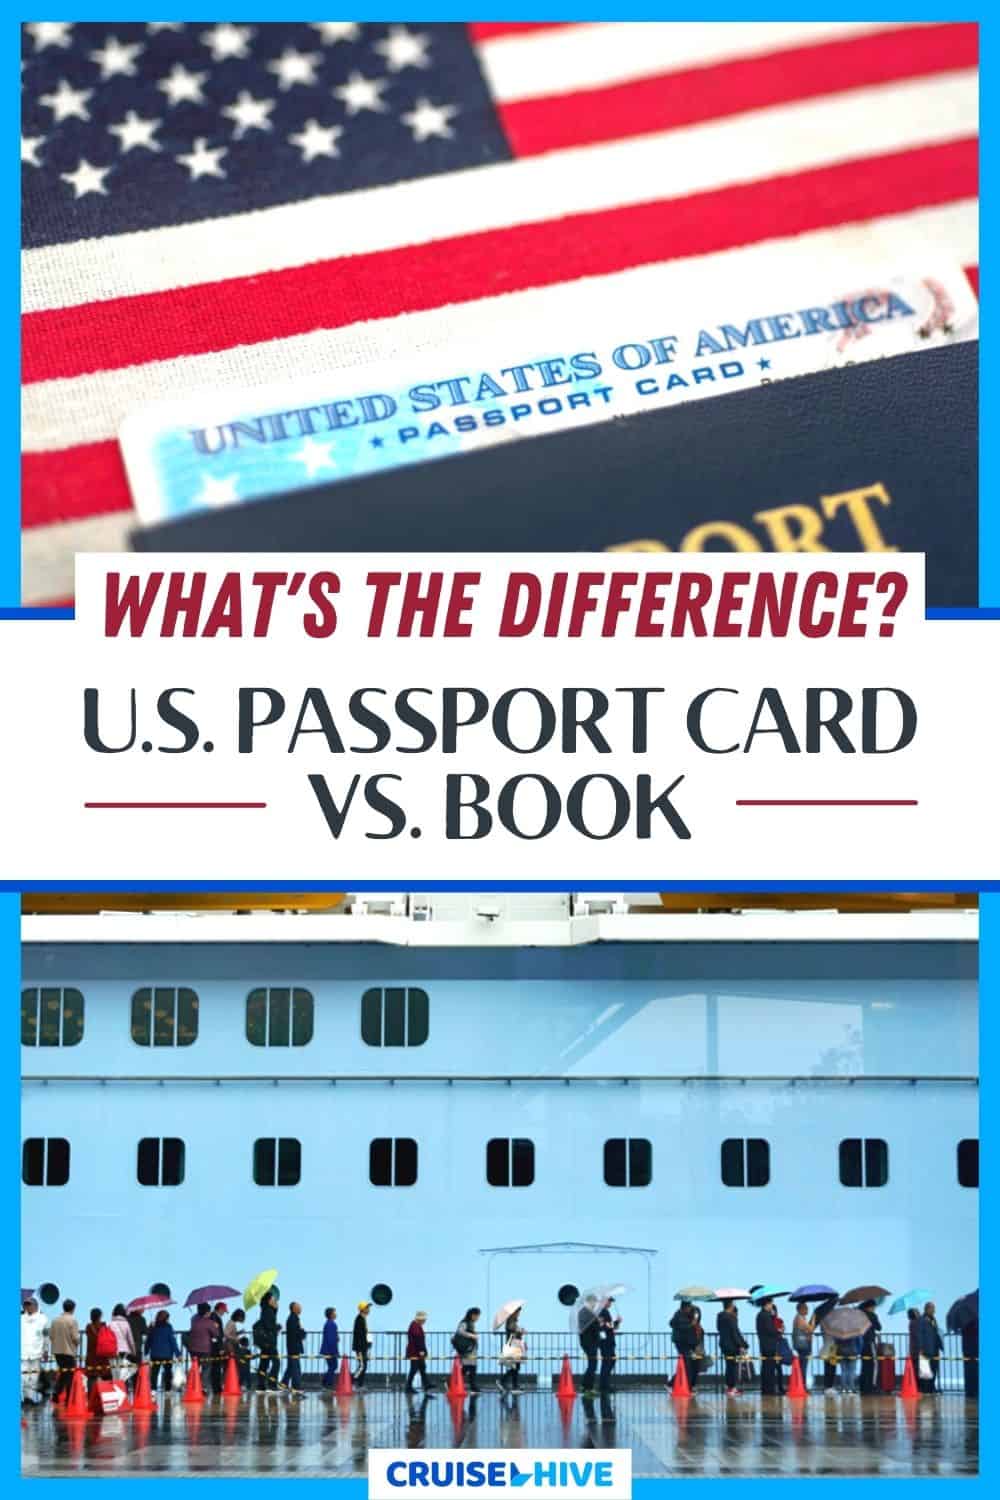 U.S. Passport Card vs. Book